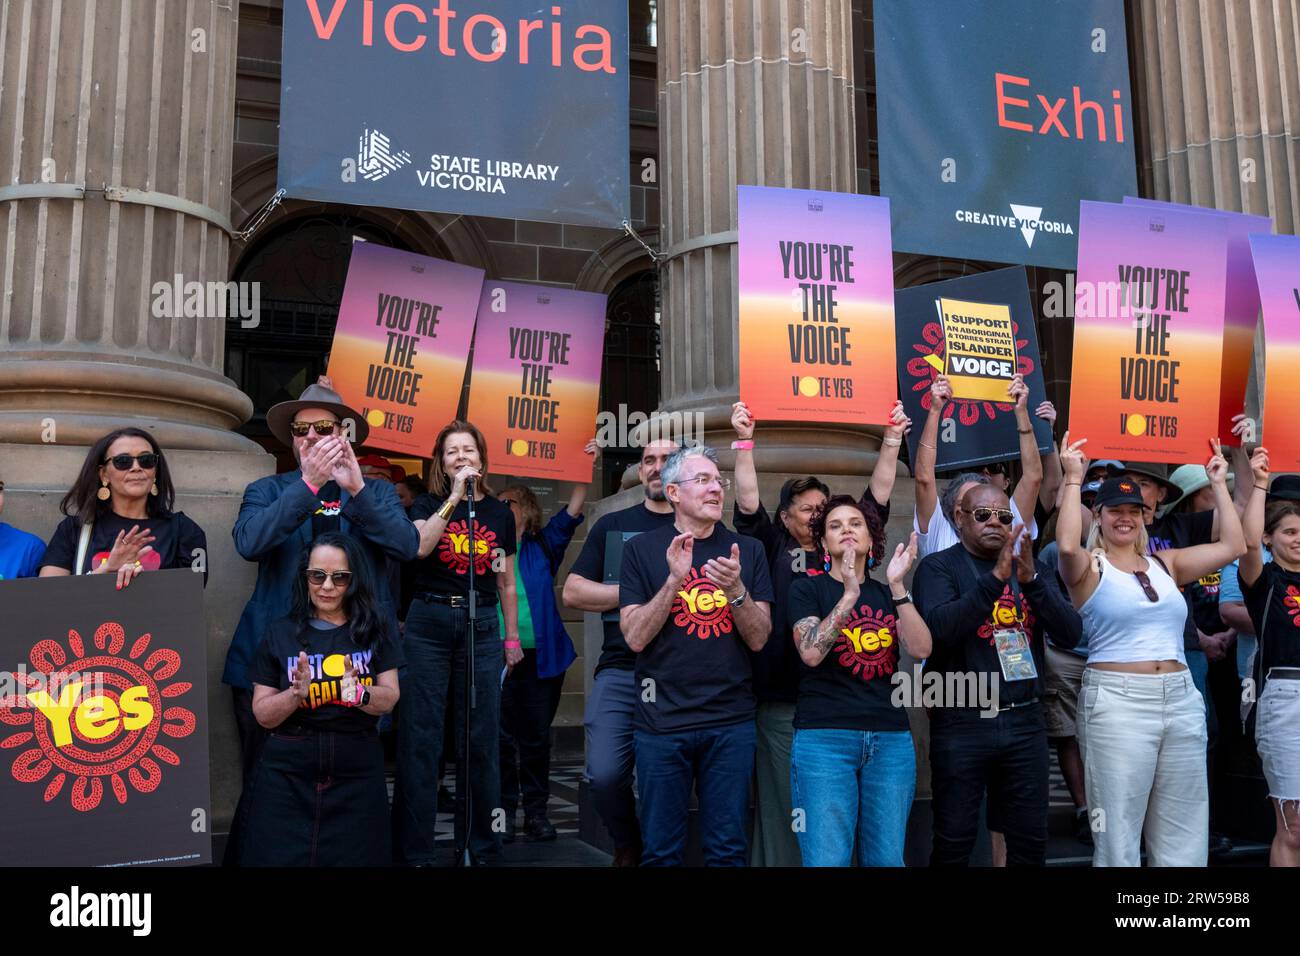 Michele O'Neil, président du Conseil australien des syndicats, s'adresse aux politiciens, aux dirigeants autochtones et aux foules lors de la campagne Walk for Yes en faveur du référendum australien reconnaissant les peuples autochtones. Melbourne, Victoria, Australie Banque D'Images